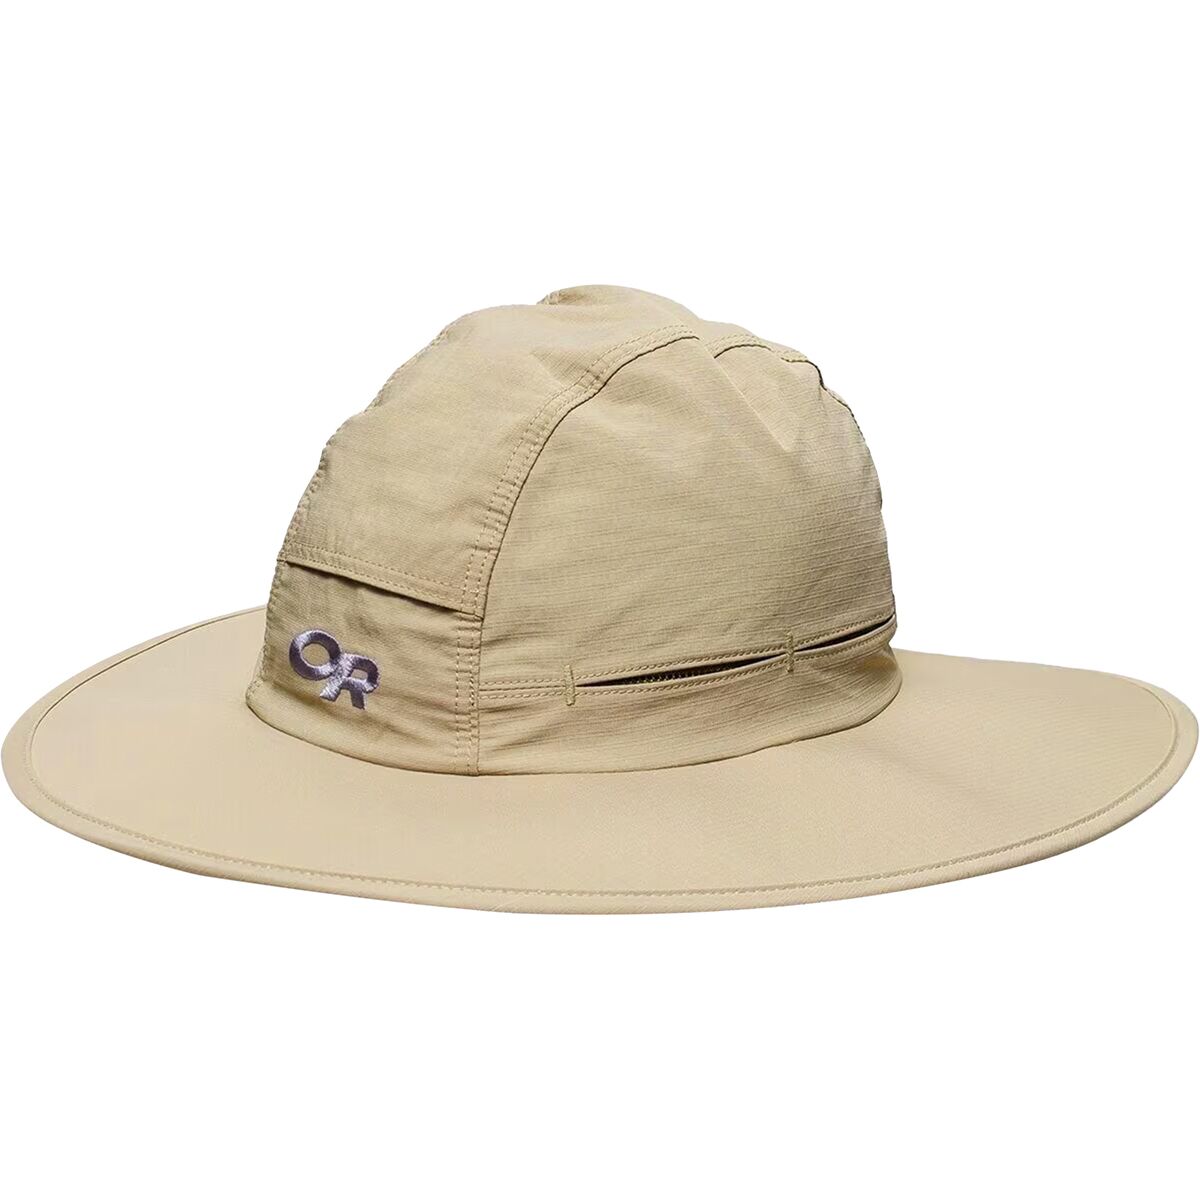 Outdoor Research Sombriolet Sun Hat - Men's